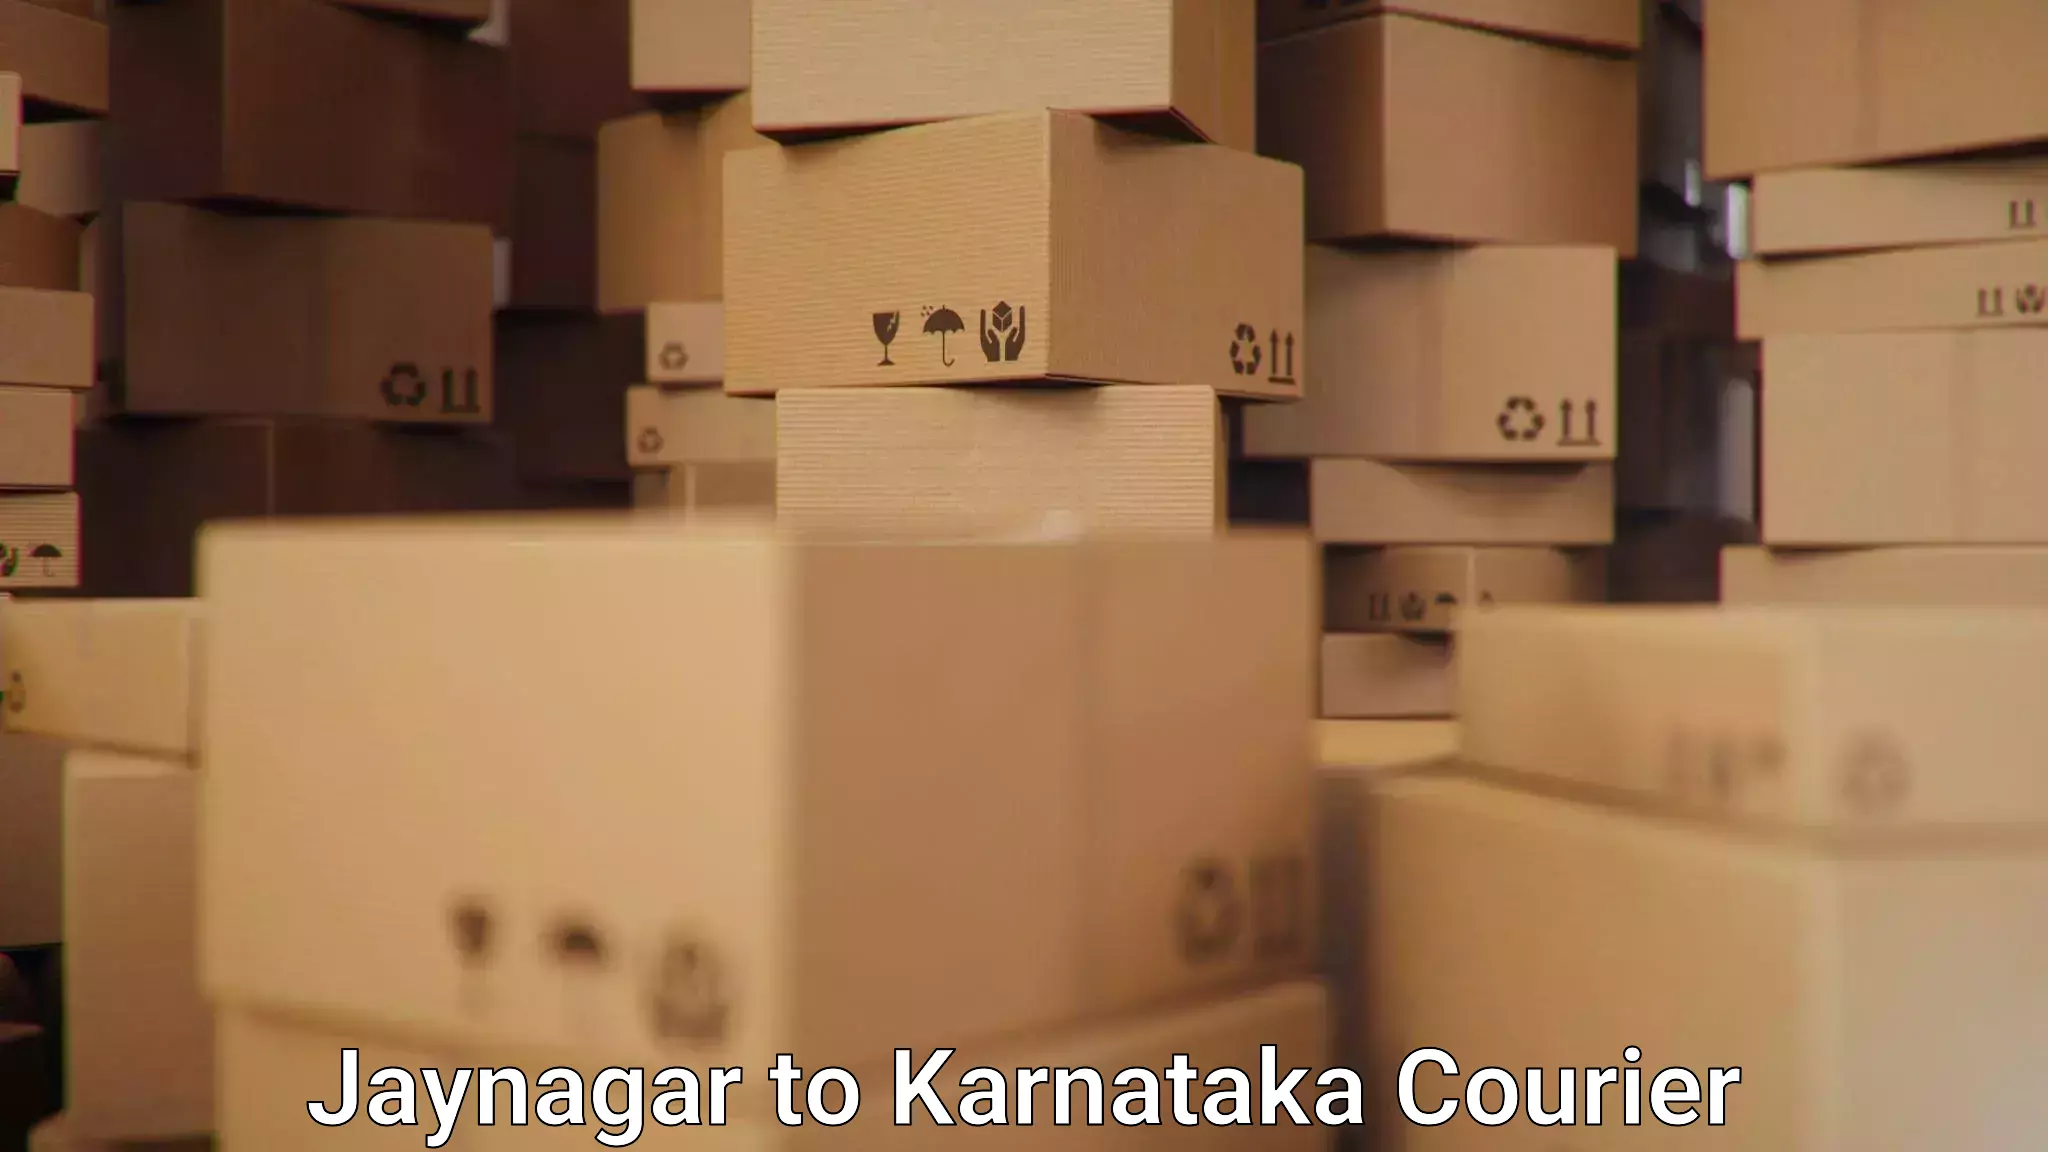 Global shipping networks Jaynagar to Dharmasthala